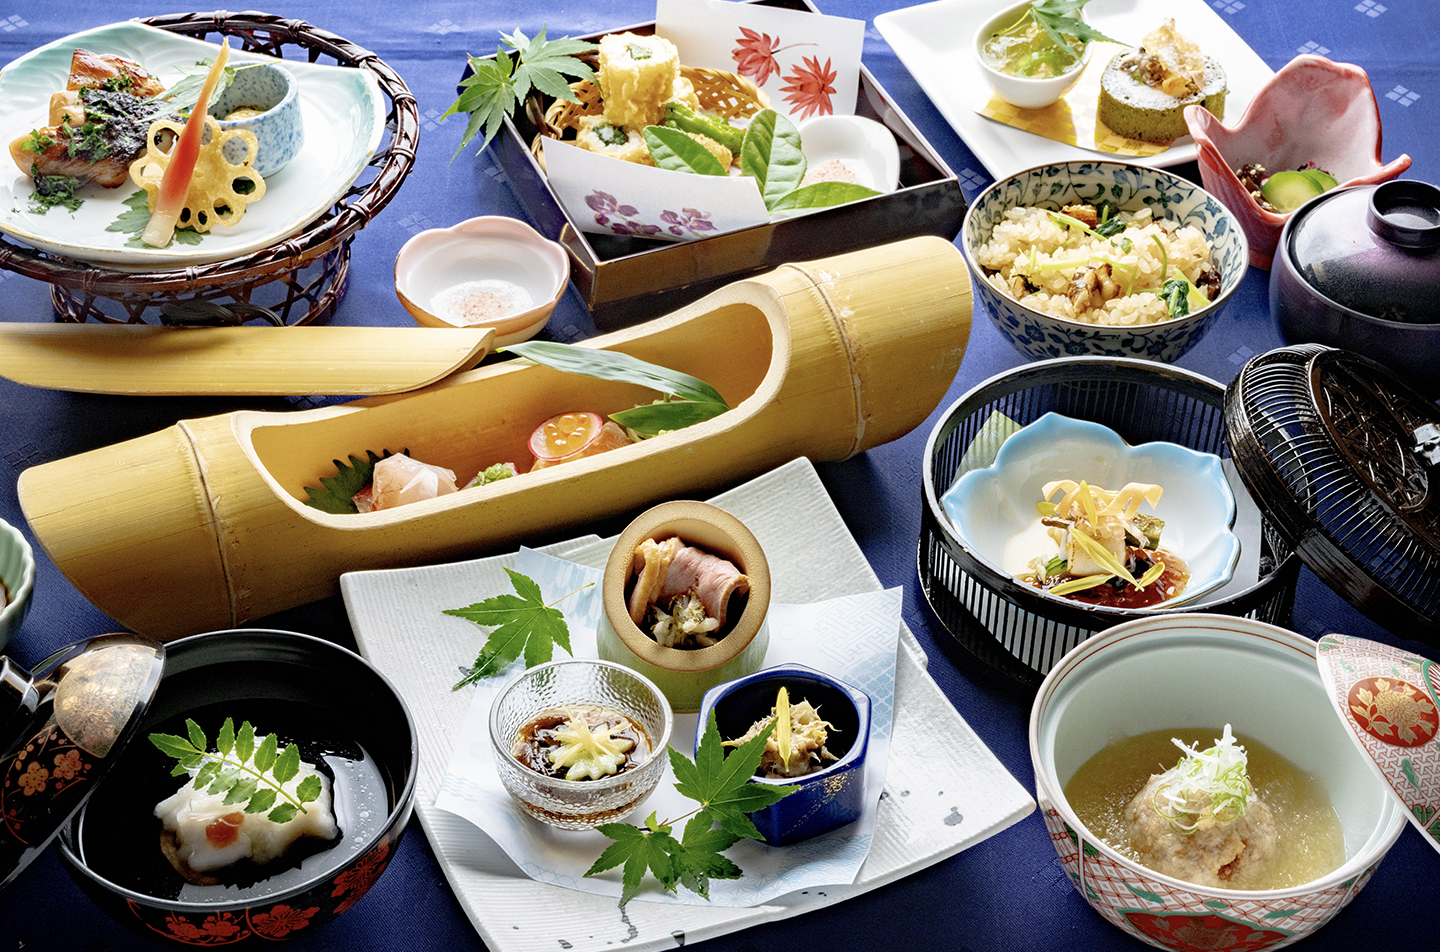 綾部のレストラン ゆう月 和食 ホタルのページの会席料理